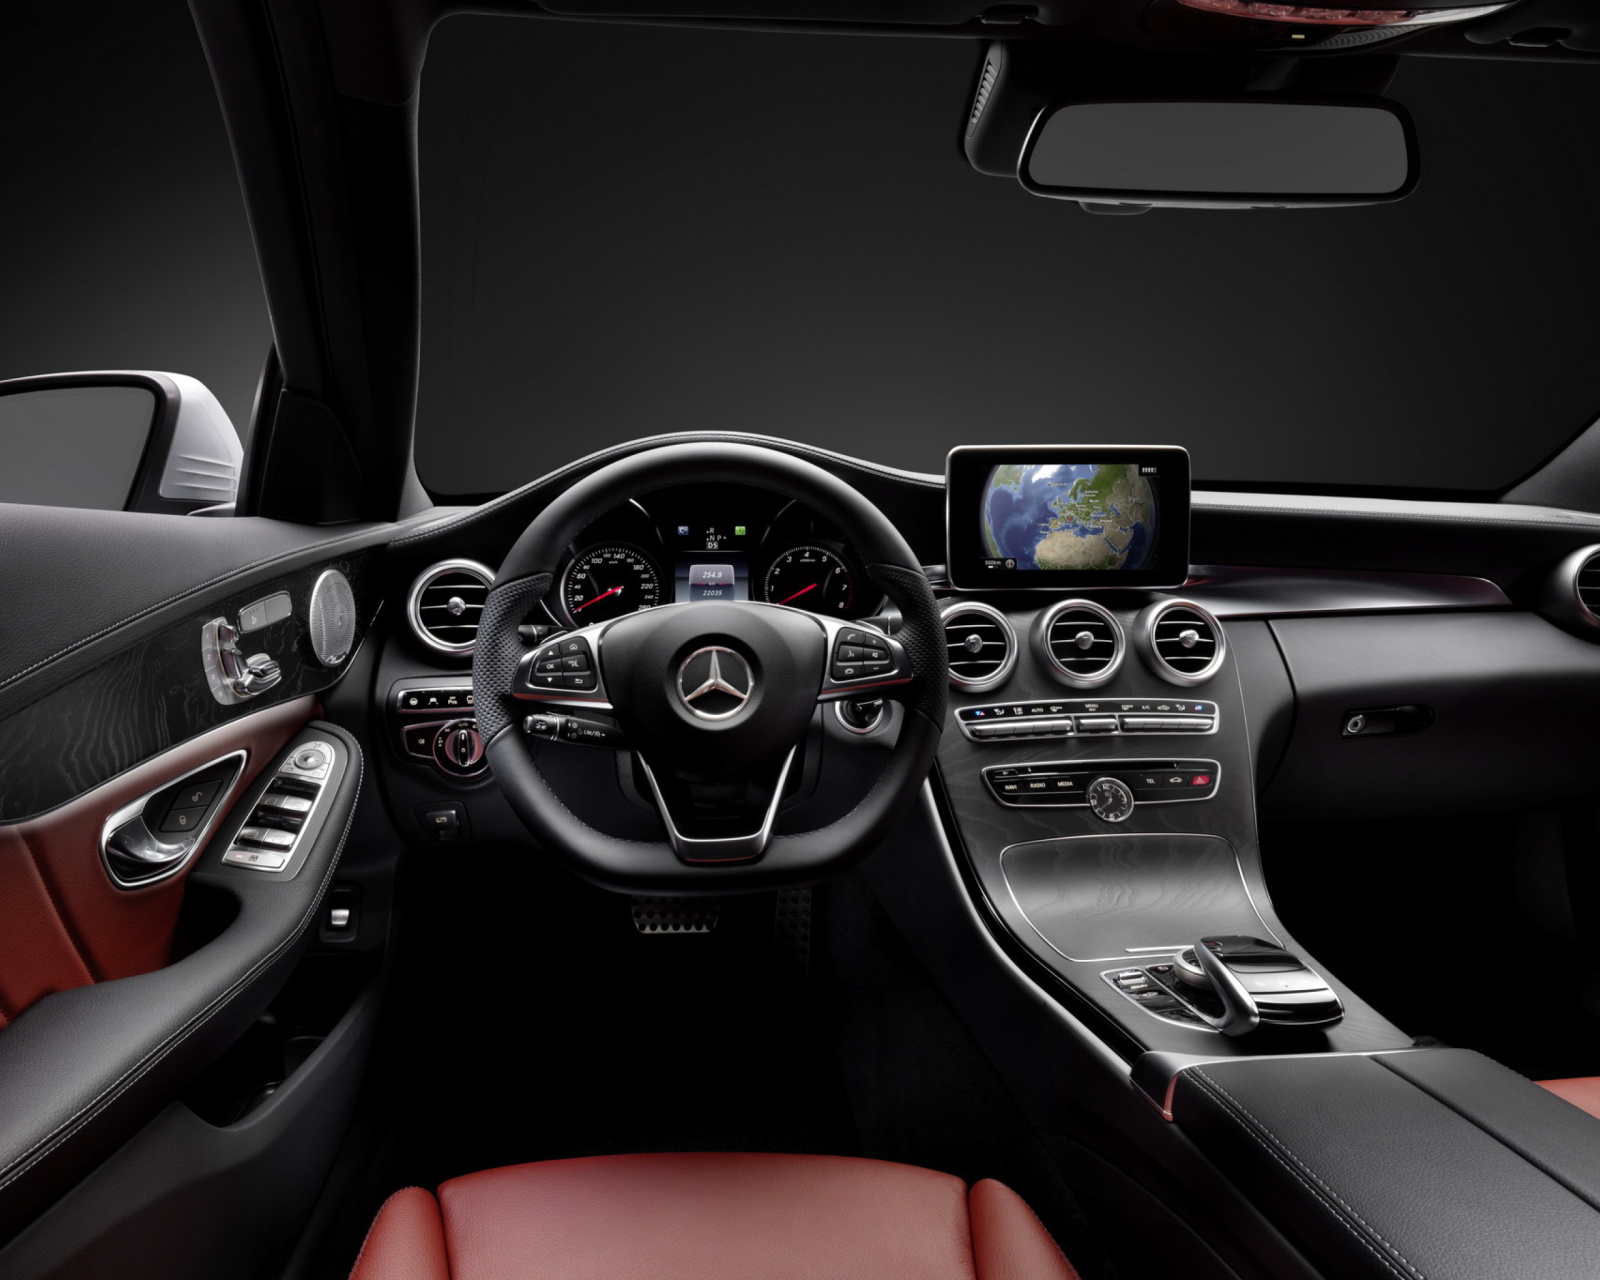 Das Mercedes Benz C250 AMG W205 2014 Luxury Interior Wallpaper 1600x1280